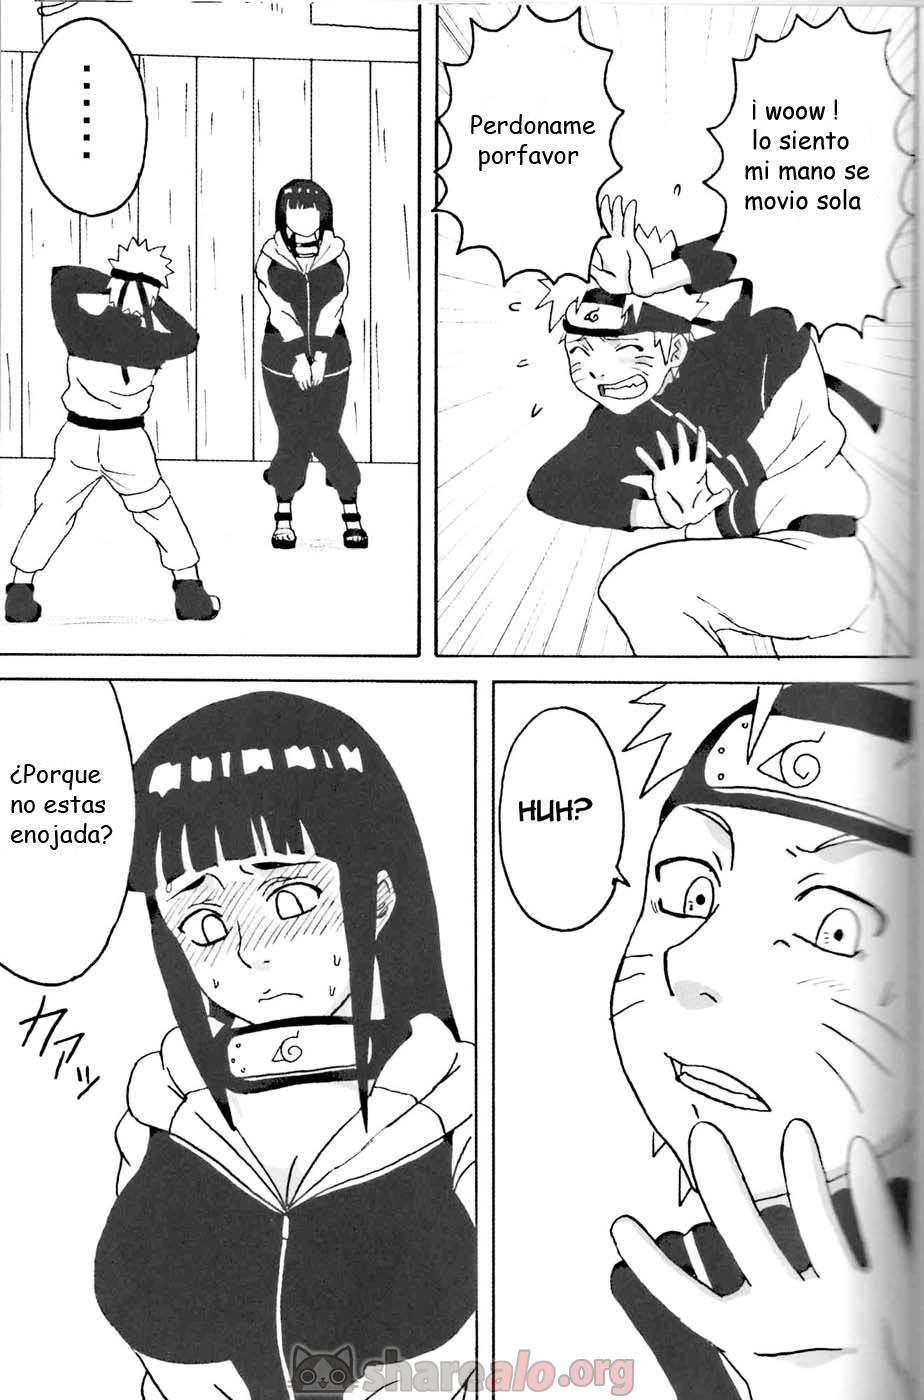 Hinata Ganbaru Doujin - 4 - Comics Porno - Hentai Manga - Cartoon XXX